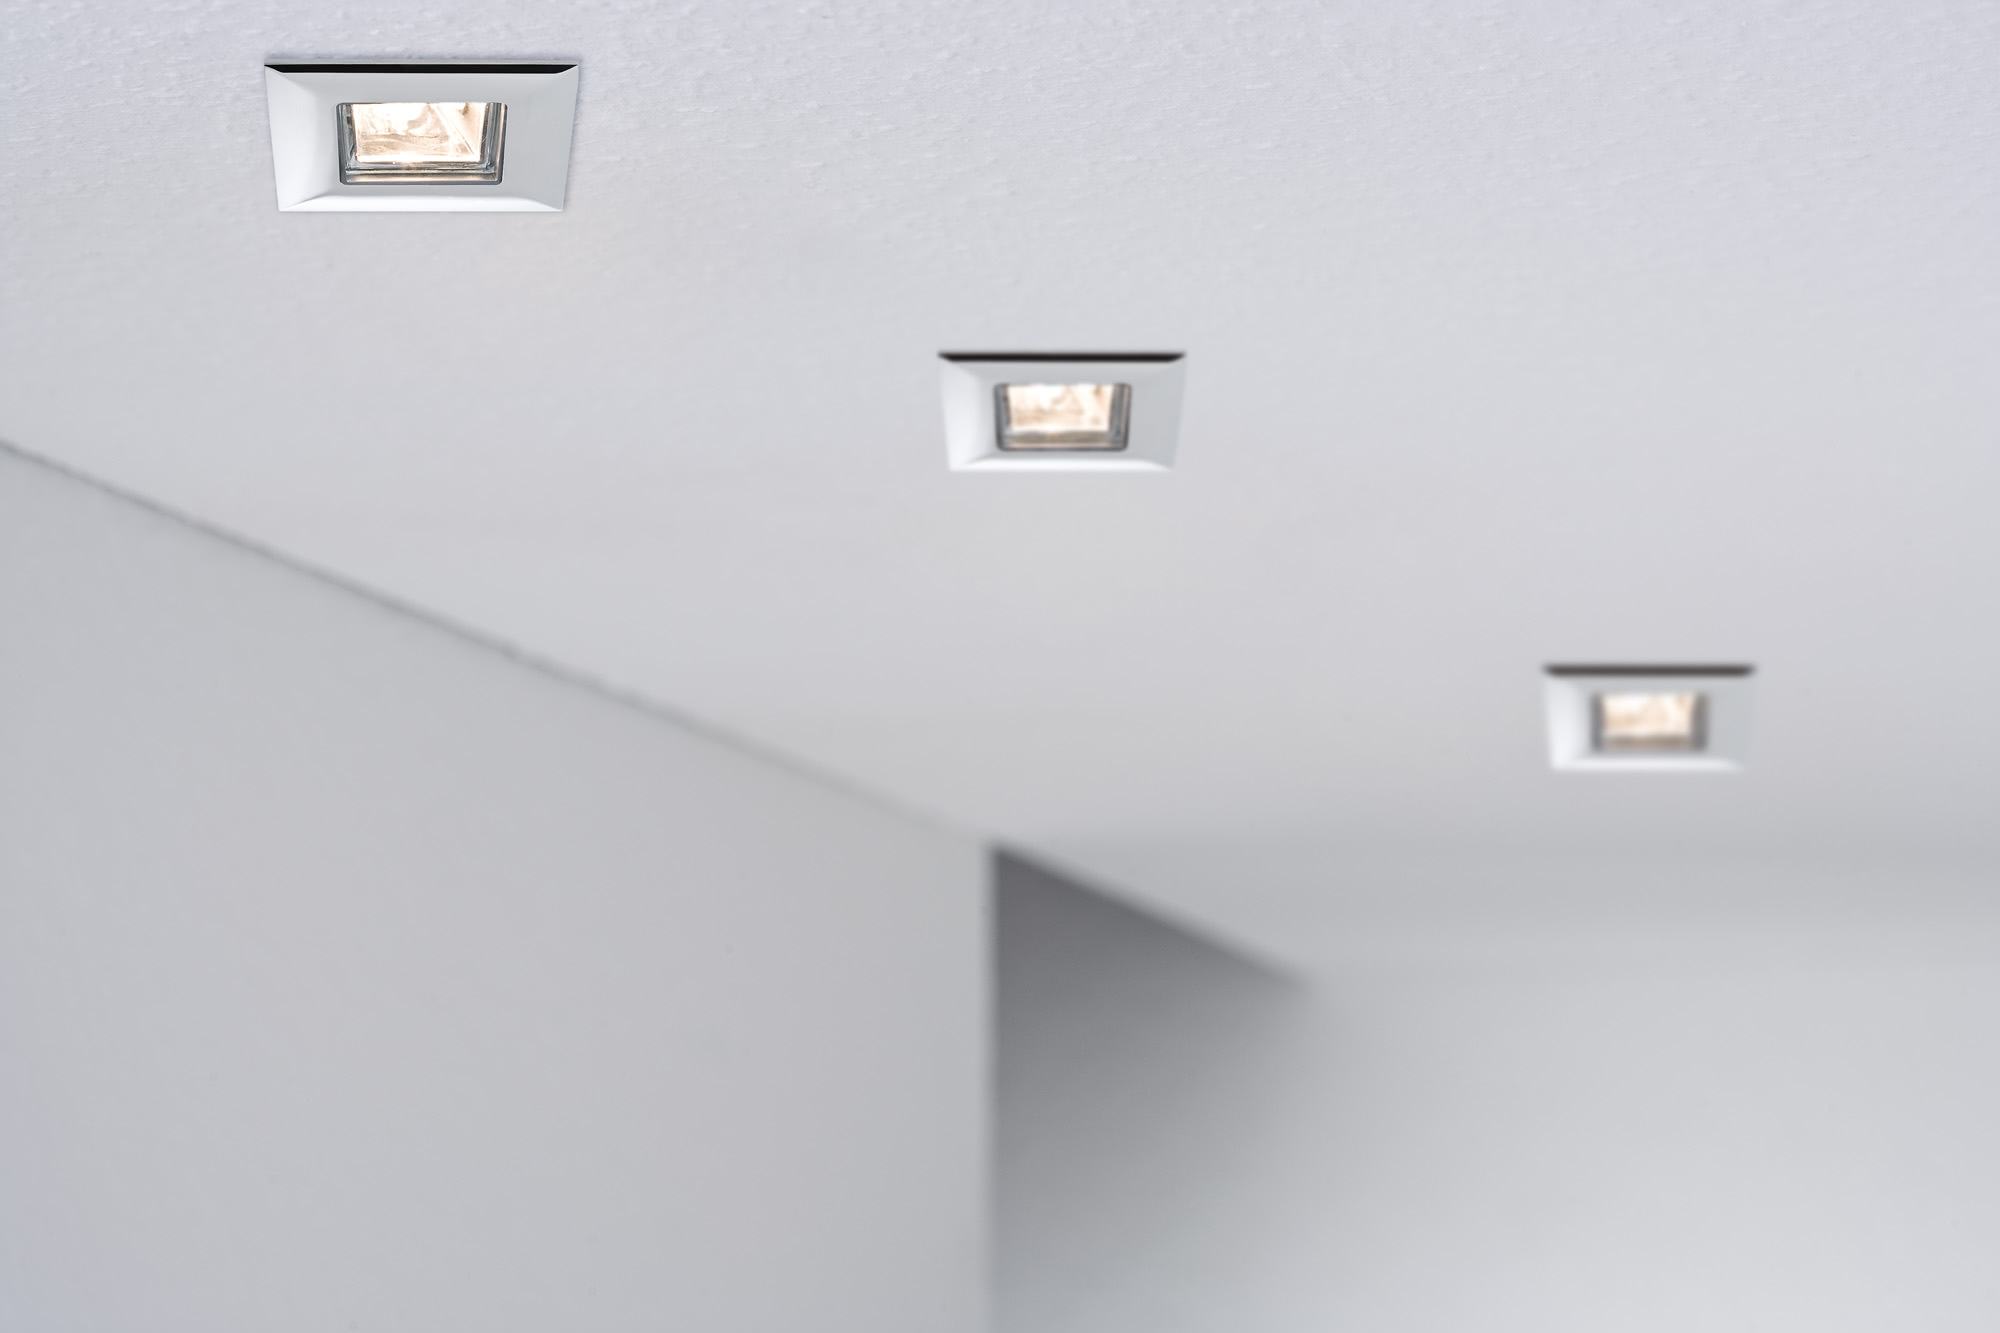 Встраиваемые споты в потолке фото: светодиодные потолочные встраиваемые лампы, схемы расположения в интерьере, отзывы